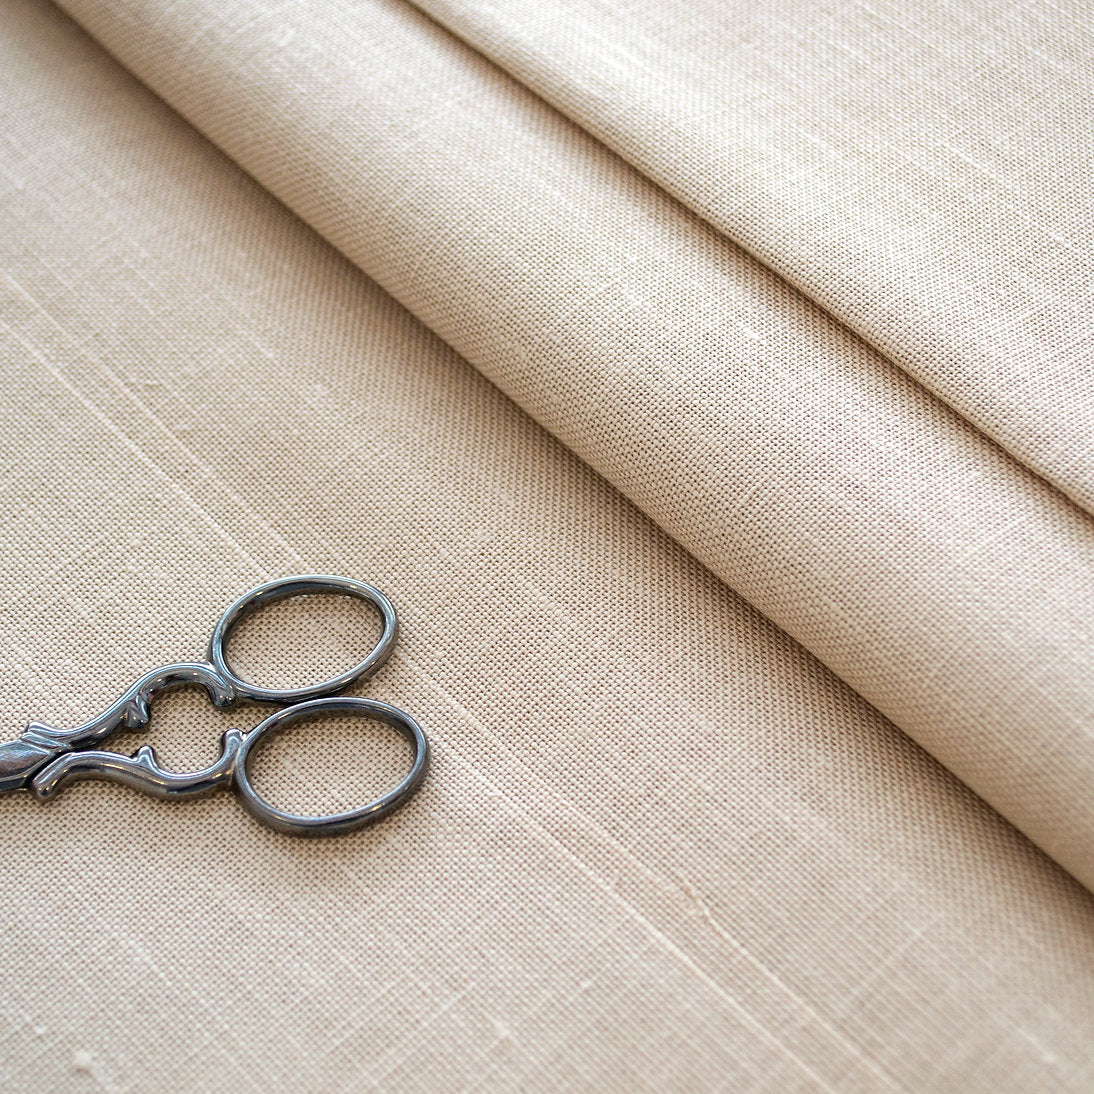 3609/309 Belfast fabric 32 ct. Light Mocha ZWEIGART 100% linen for embroidery